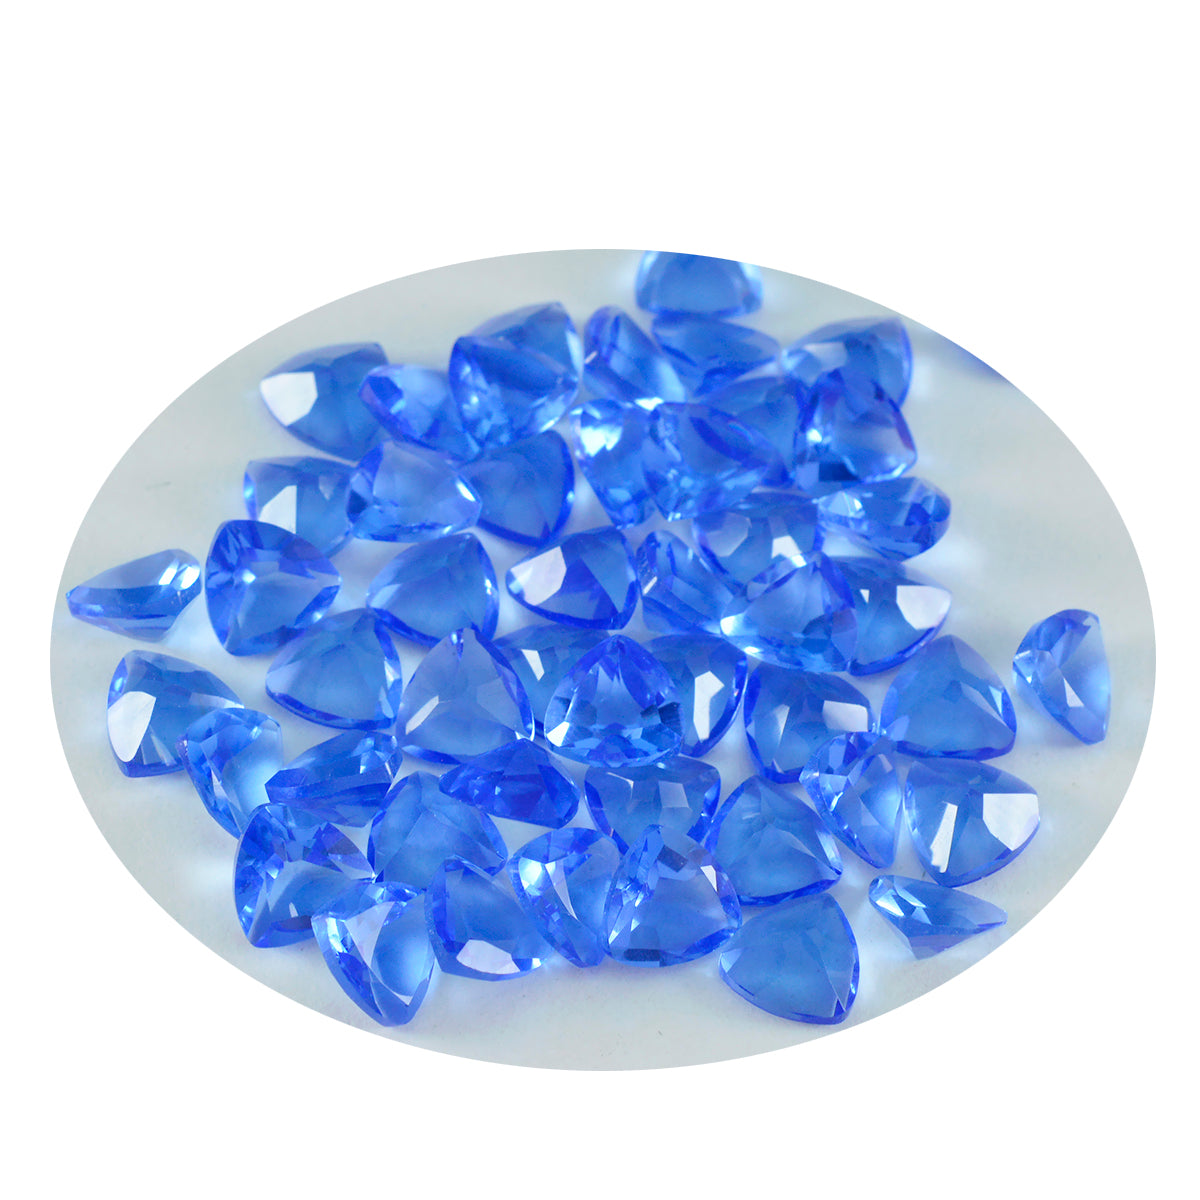 riyogems 1 шт. синий сапфир cz ограненный 8x8 мм форма триллиона прекрасного качества свободный драгоценный камень